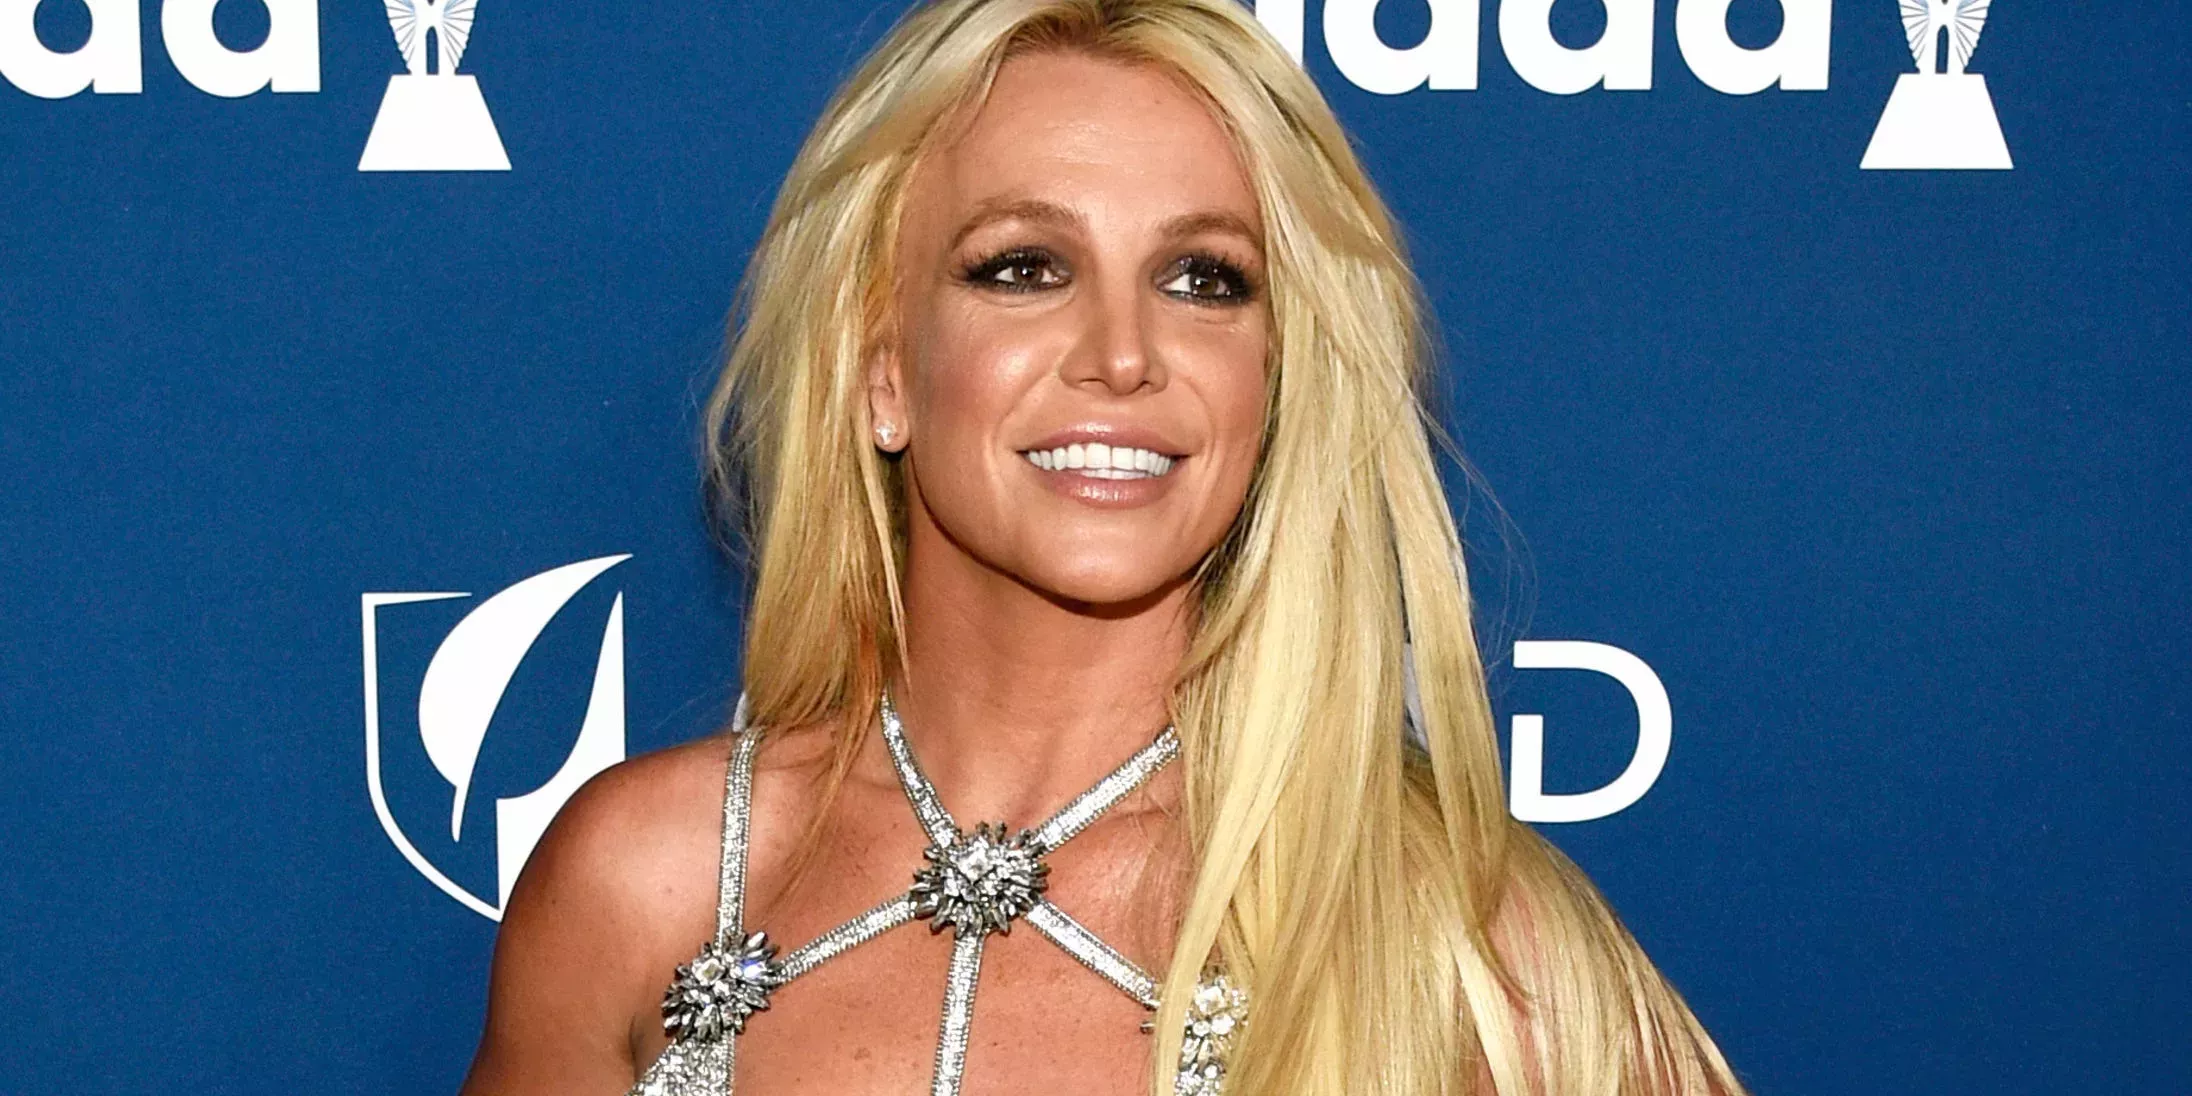 Britney Spears es la última famosa en divorciarse en 2023, según los informes. Aquí tienes la lista completa de las rupturas de famosos este año.